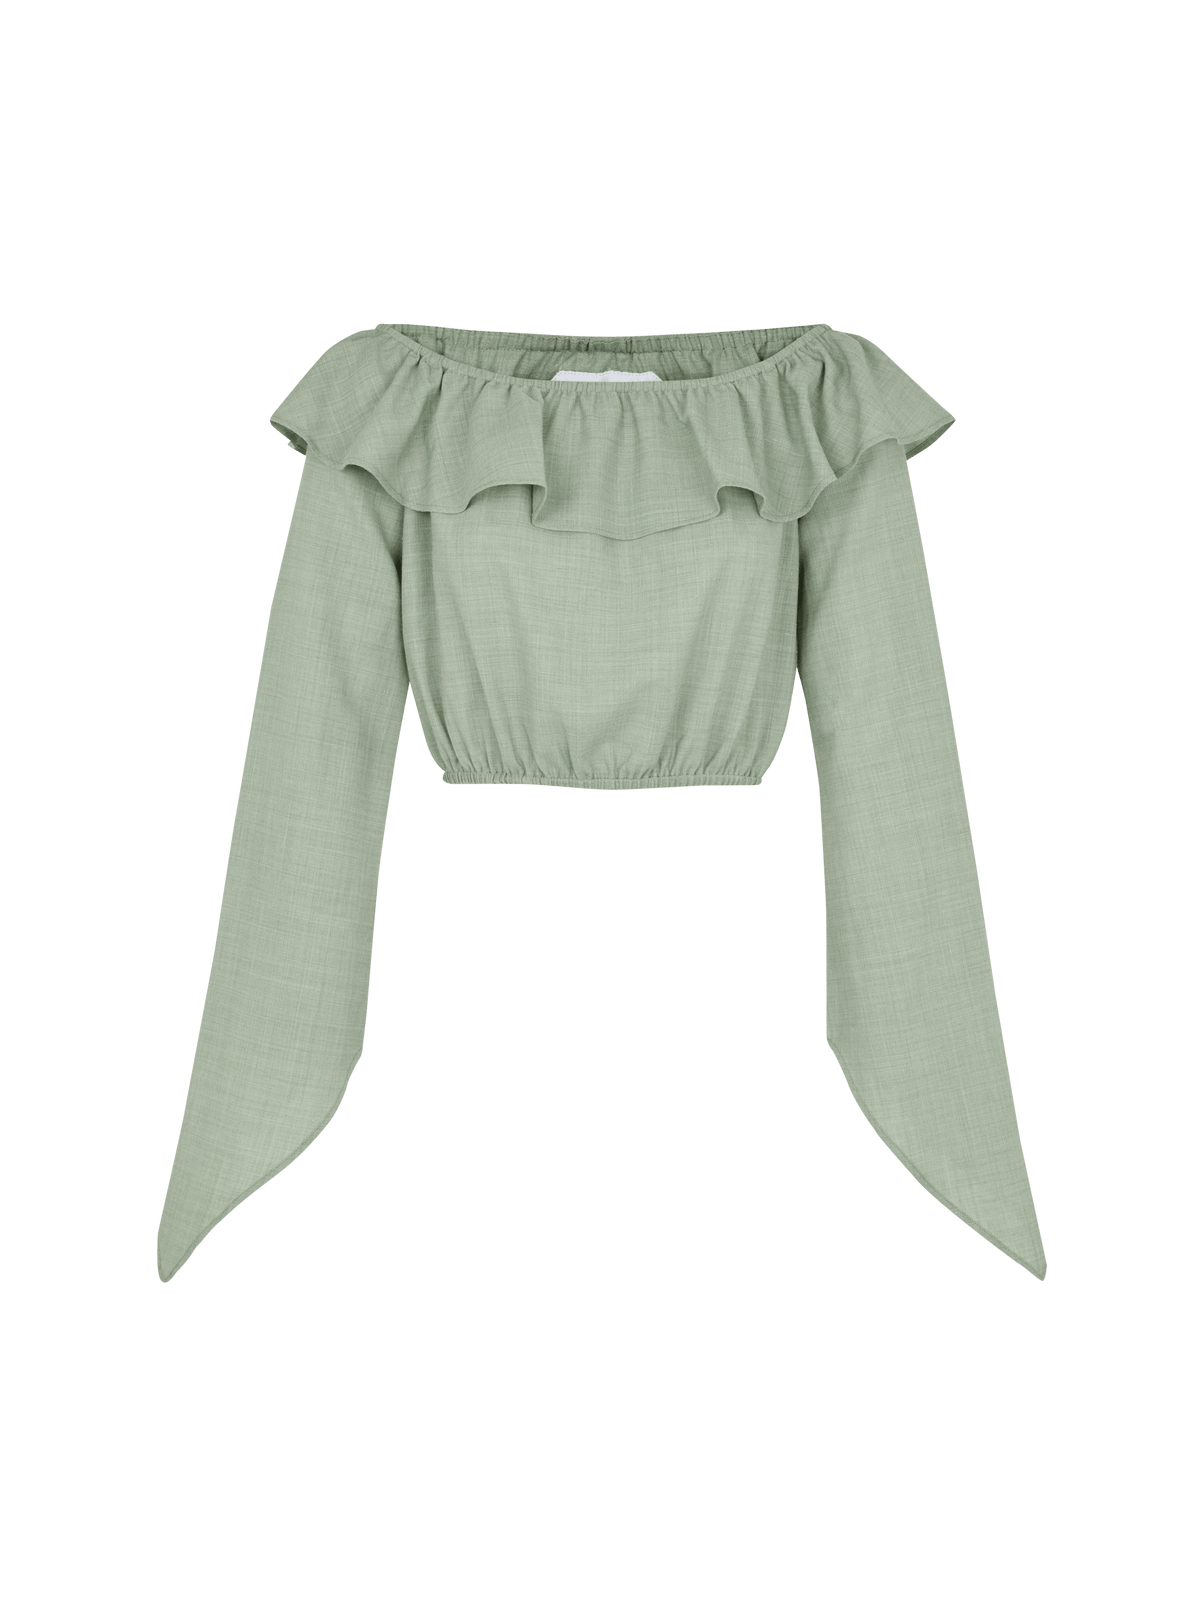 CECILE - Blouse crop top encolure Bardot volantée en toile de coton Oeko-Tex vert céladon Blouse Fête Impériale